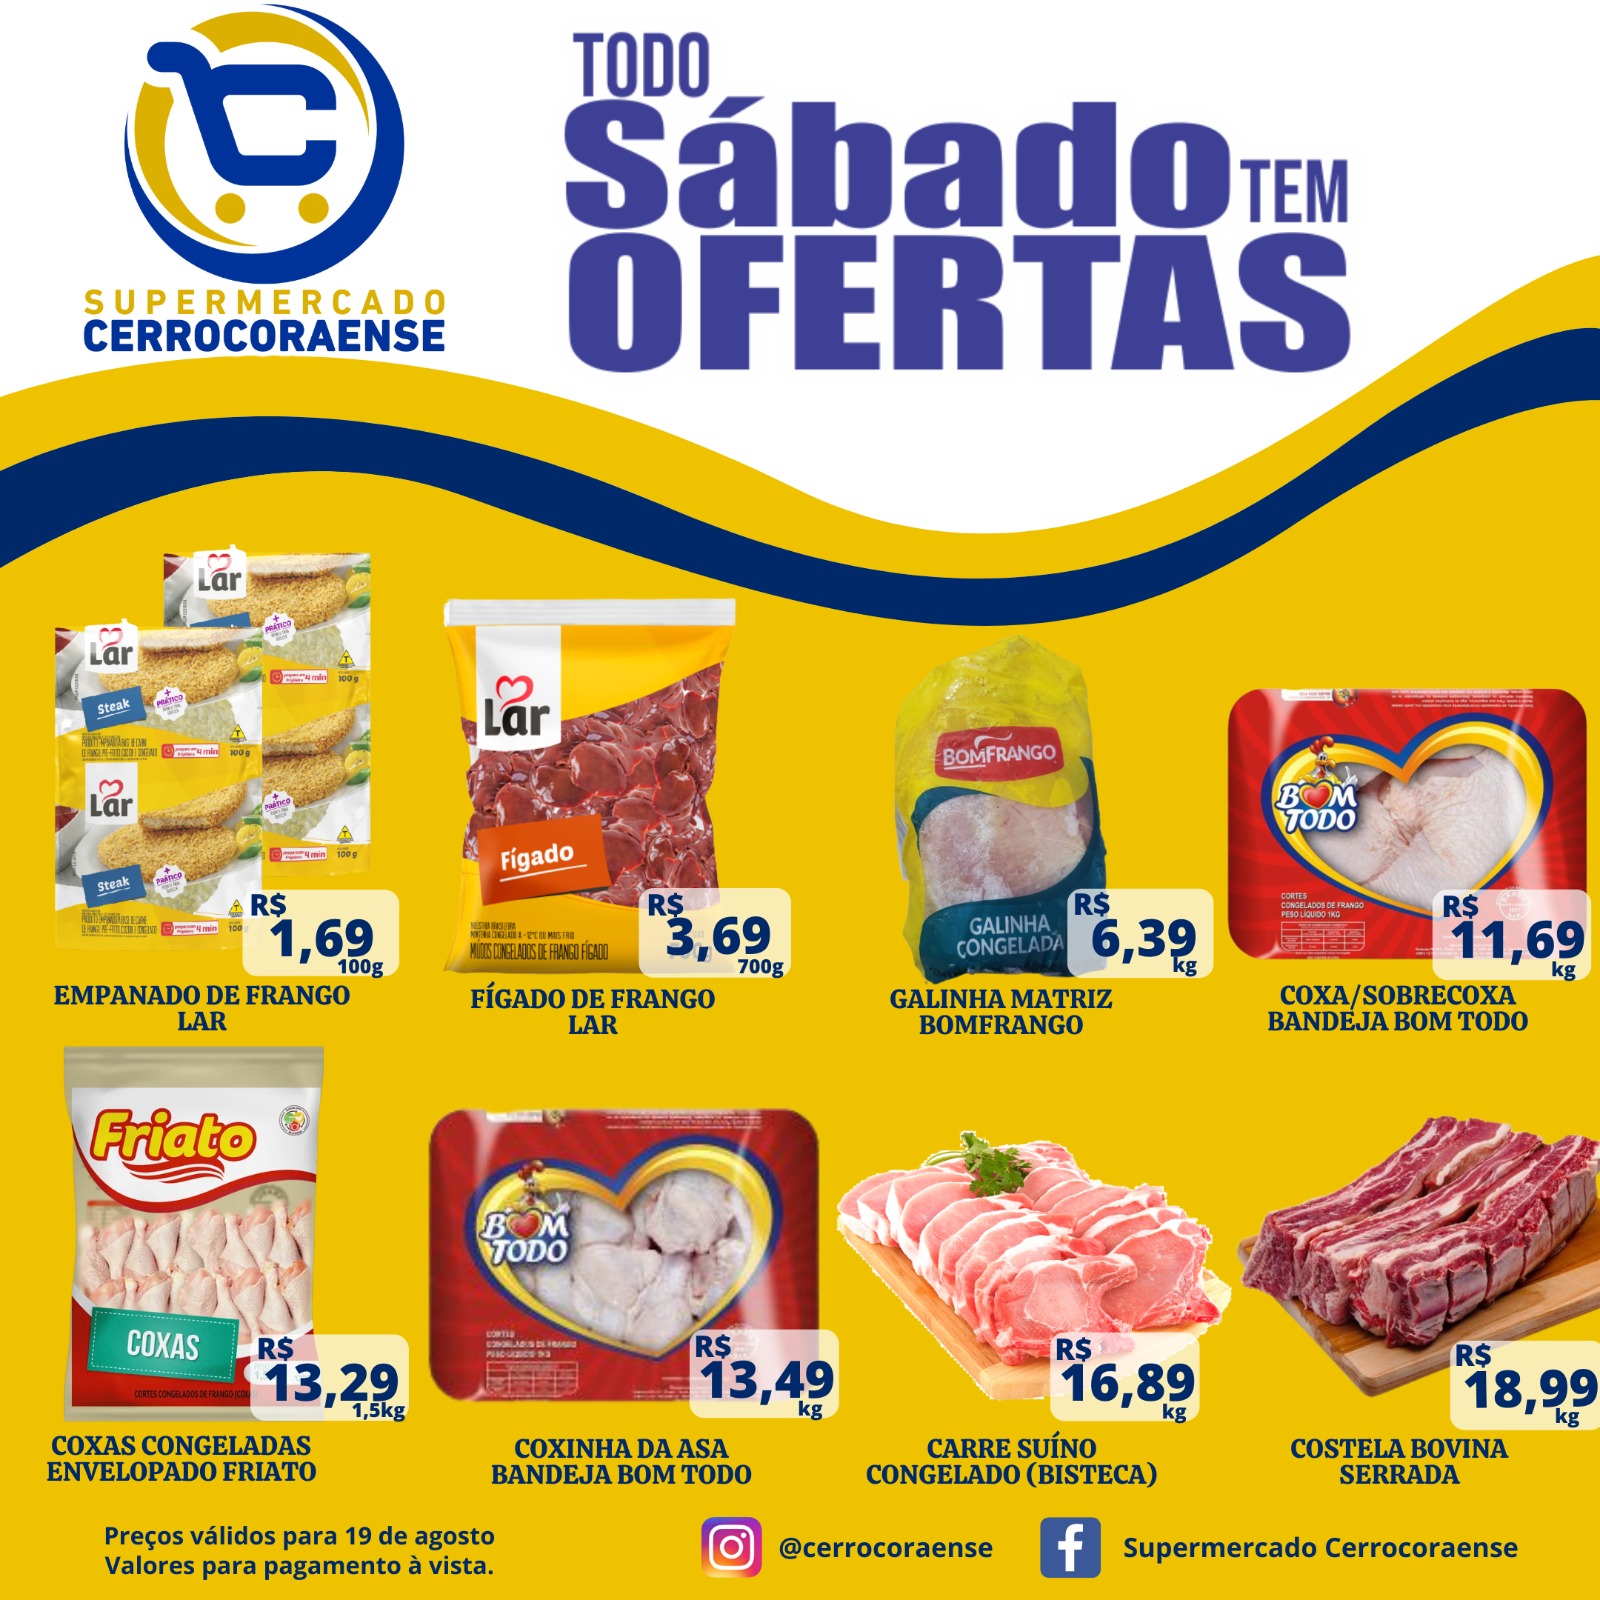 Sábado de frios no Supermercado Cerrocoraense, confira às ofertas